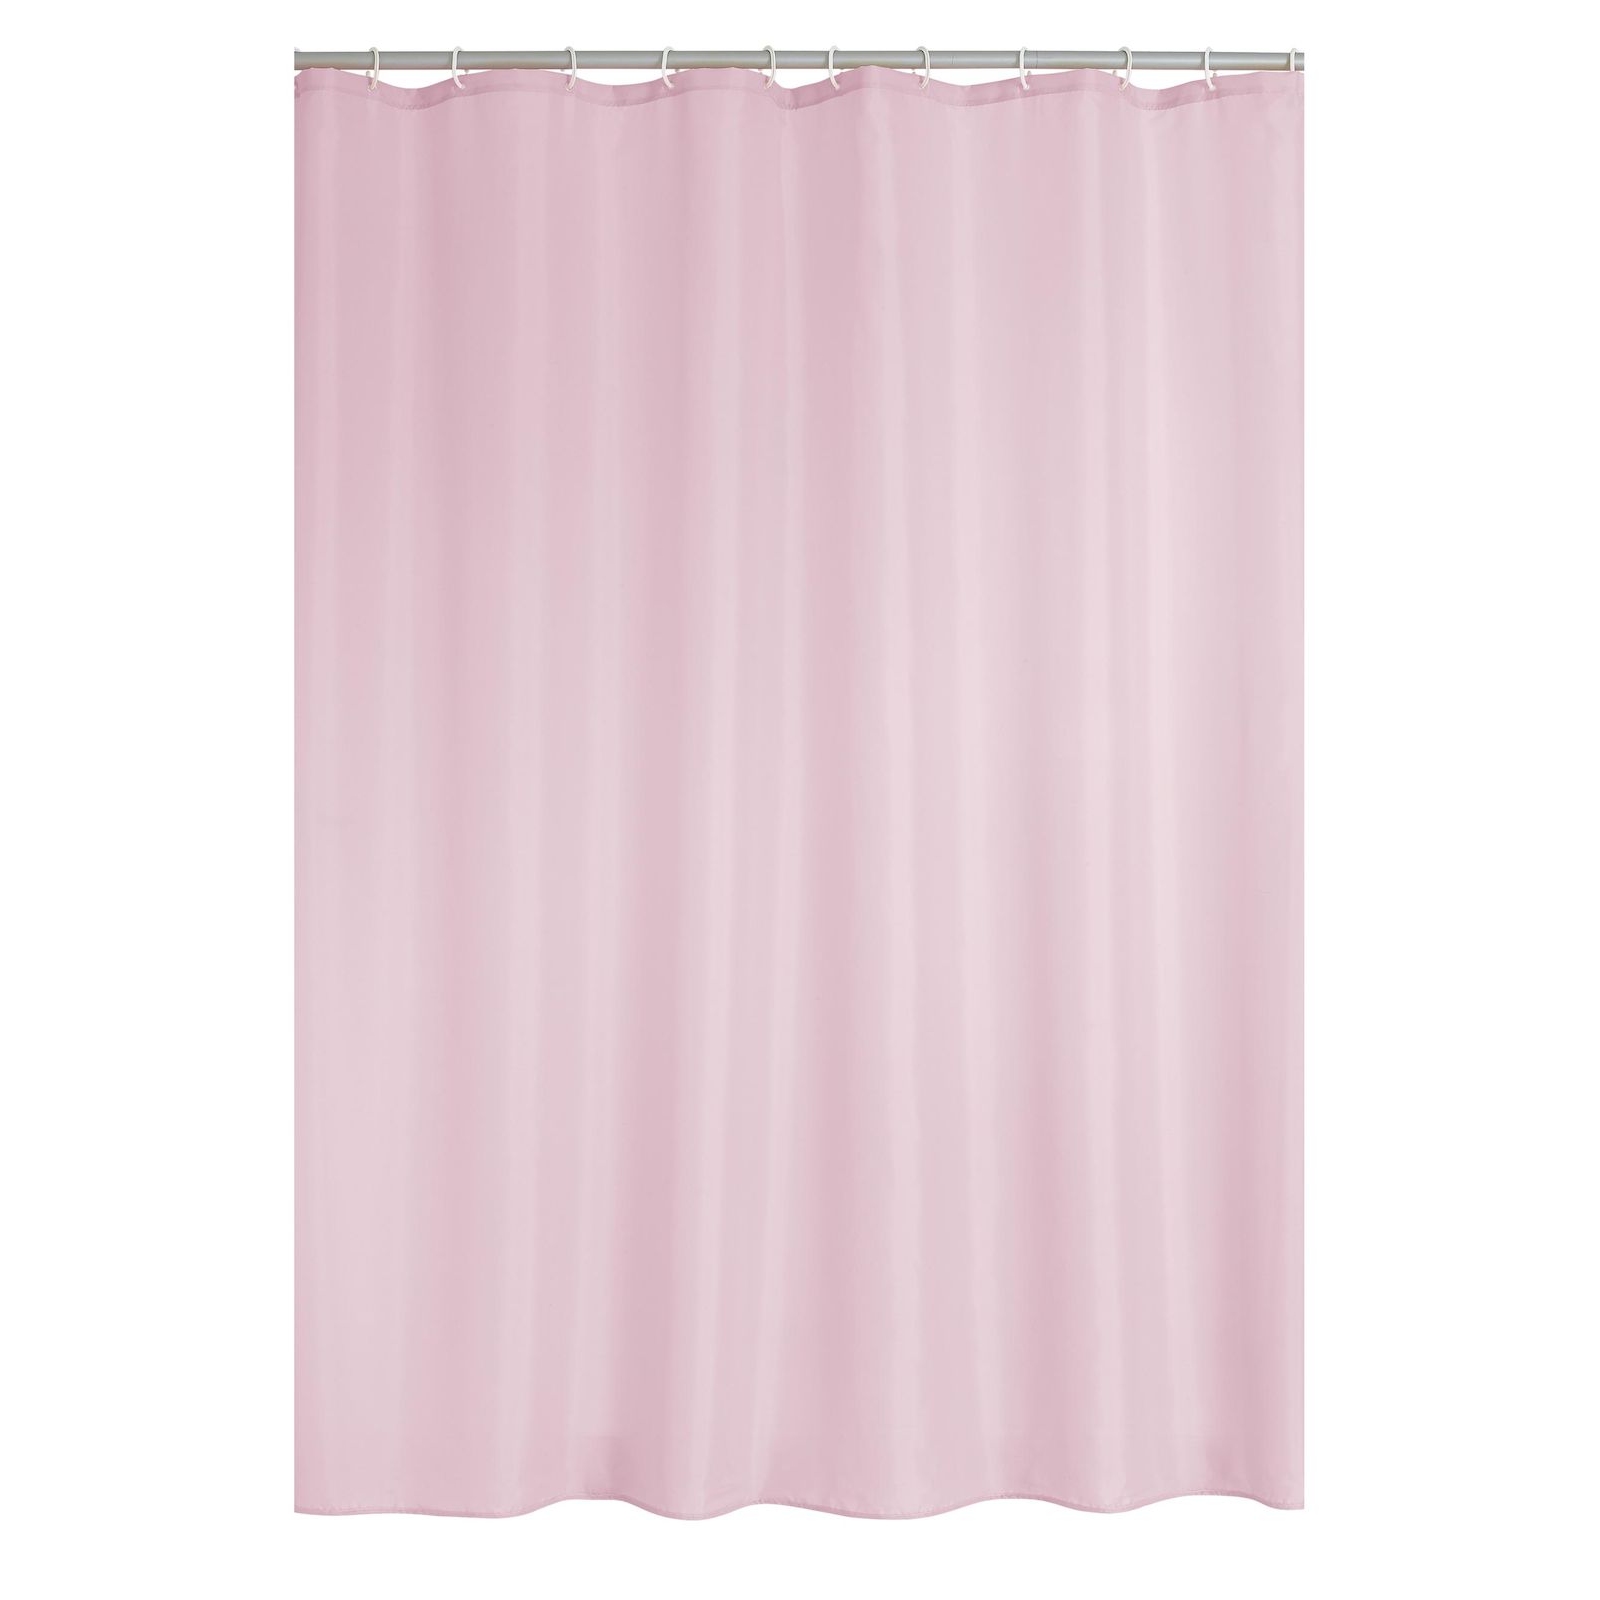 Штора для ванной Ridder Madison розовая 200х180 см штора для ванной ridder summer day разноцветная 200х180 см